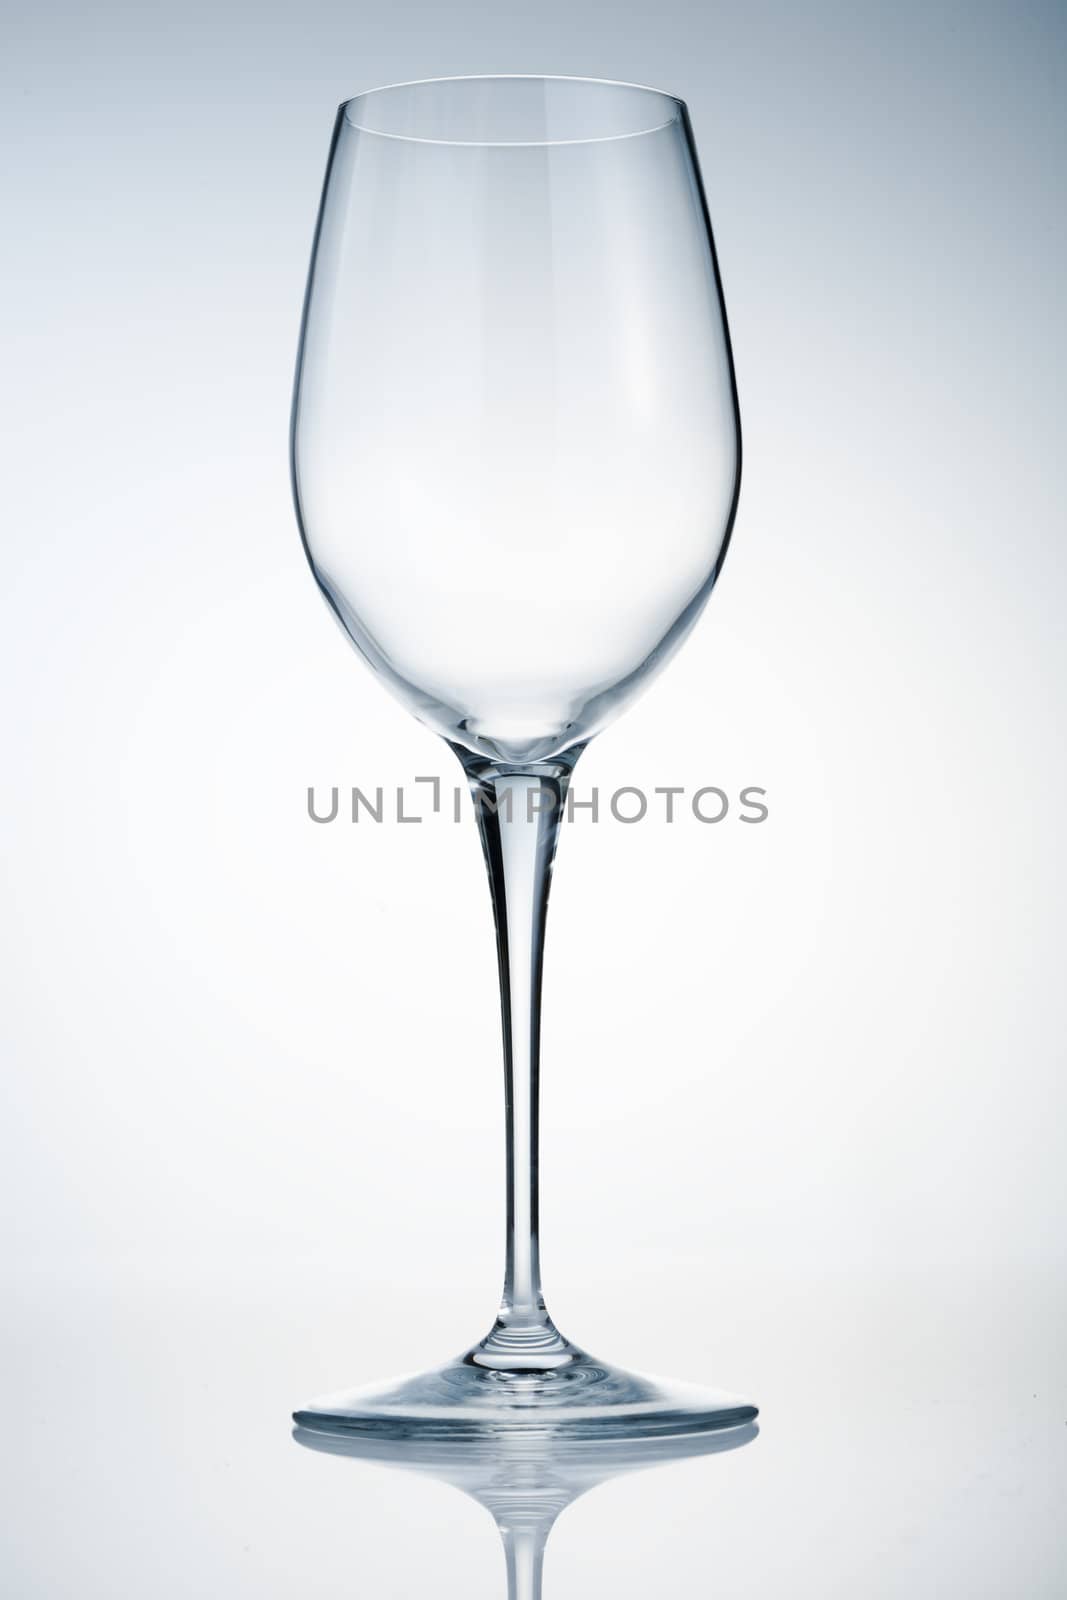 Empty wine glass by mjp